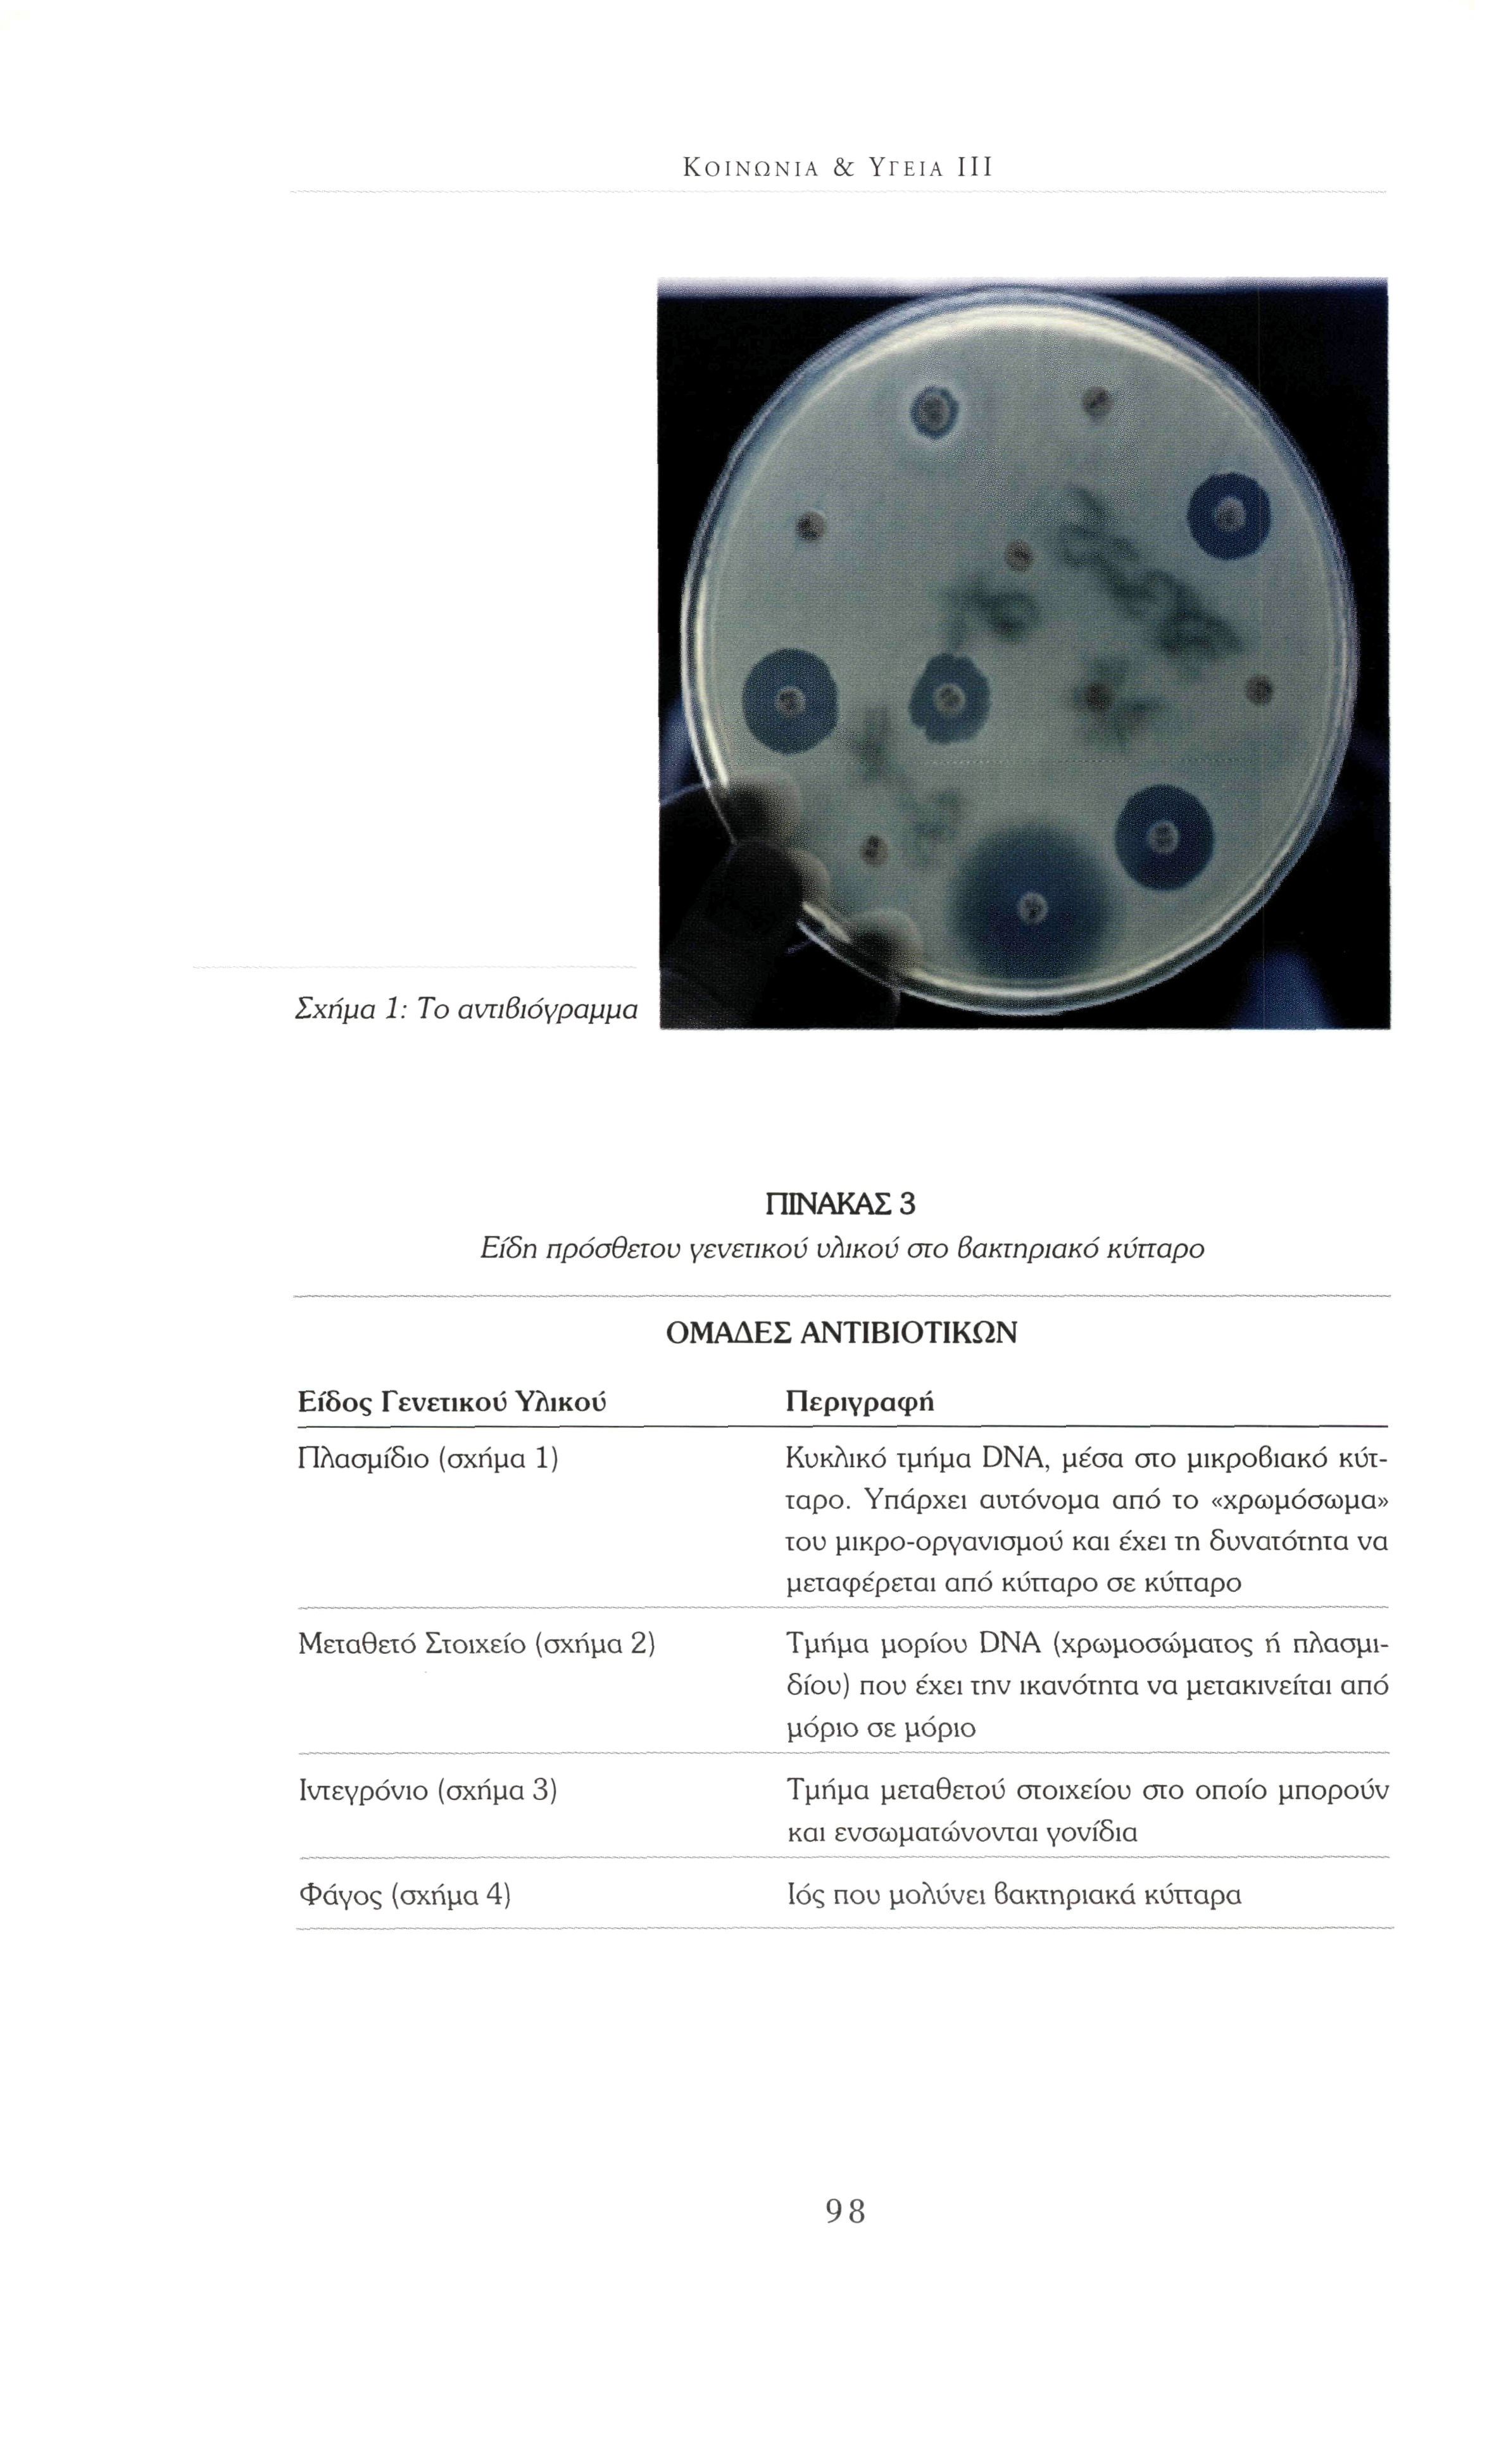 ΚΟΙΝΩΝΊΑ & ΥΓΕΊΑ III Σχήμα 1 : Το αντιβιόγραμμα ΠΙΝΑΚΑΣ 3 Είδη πρόσθετου γενετικού υλικού στο βακτηριακό κύτταρο ΟΜΑΔΕΣ ΑΝΤΙΒΙΟΤΙΚΩΝ Είδος Γενετικού Υλικού Πλασμίδιο (σχήμα 1) Μεταθετό Στοιχείο